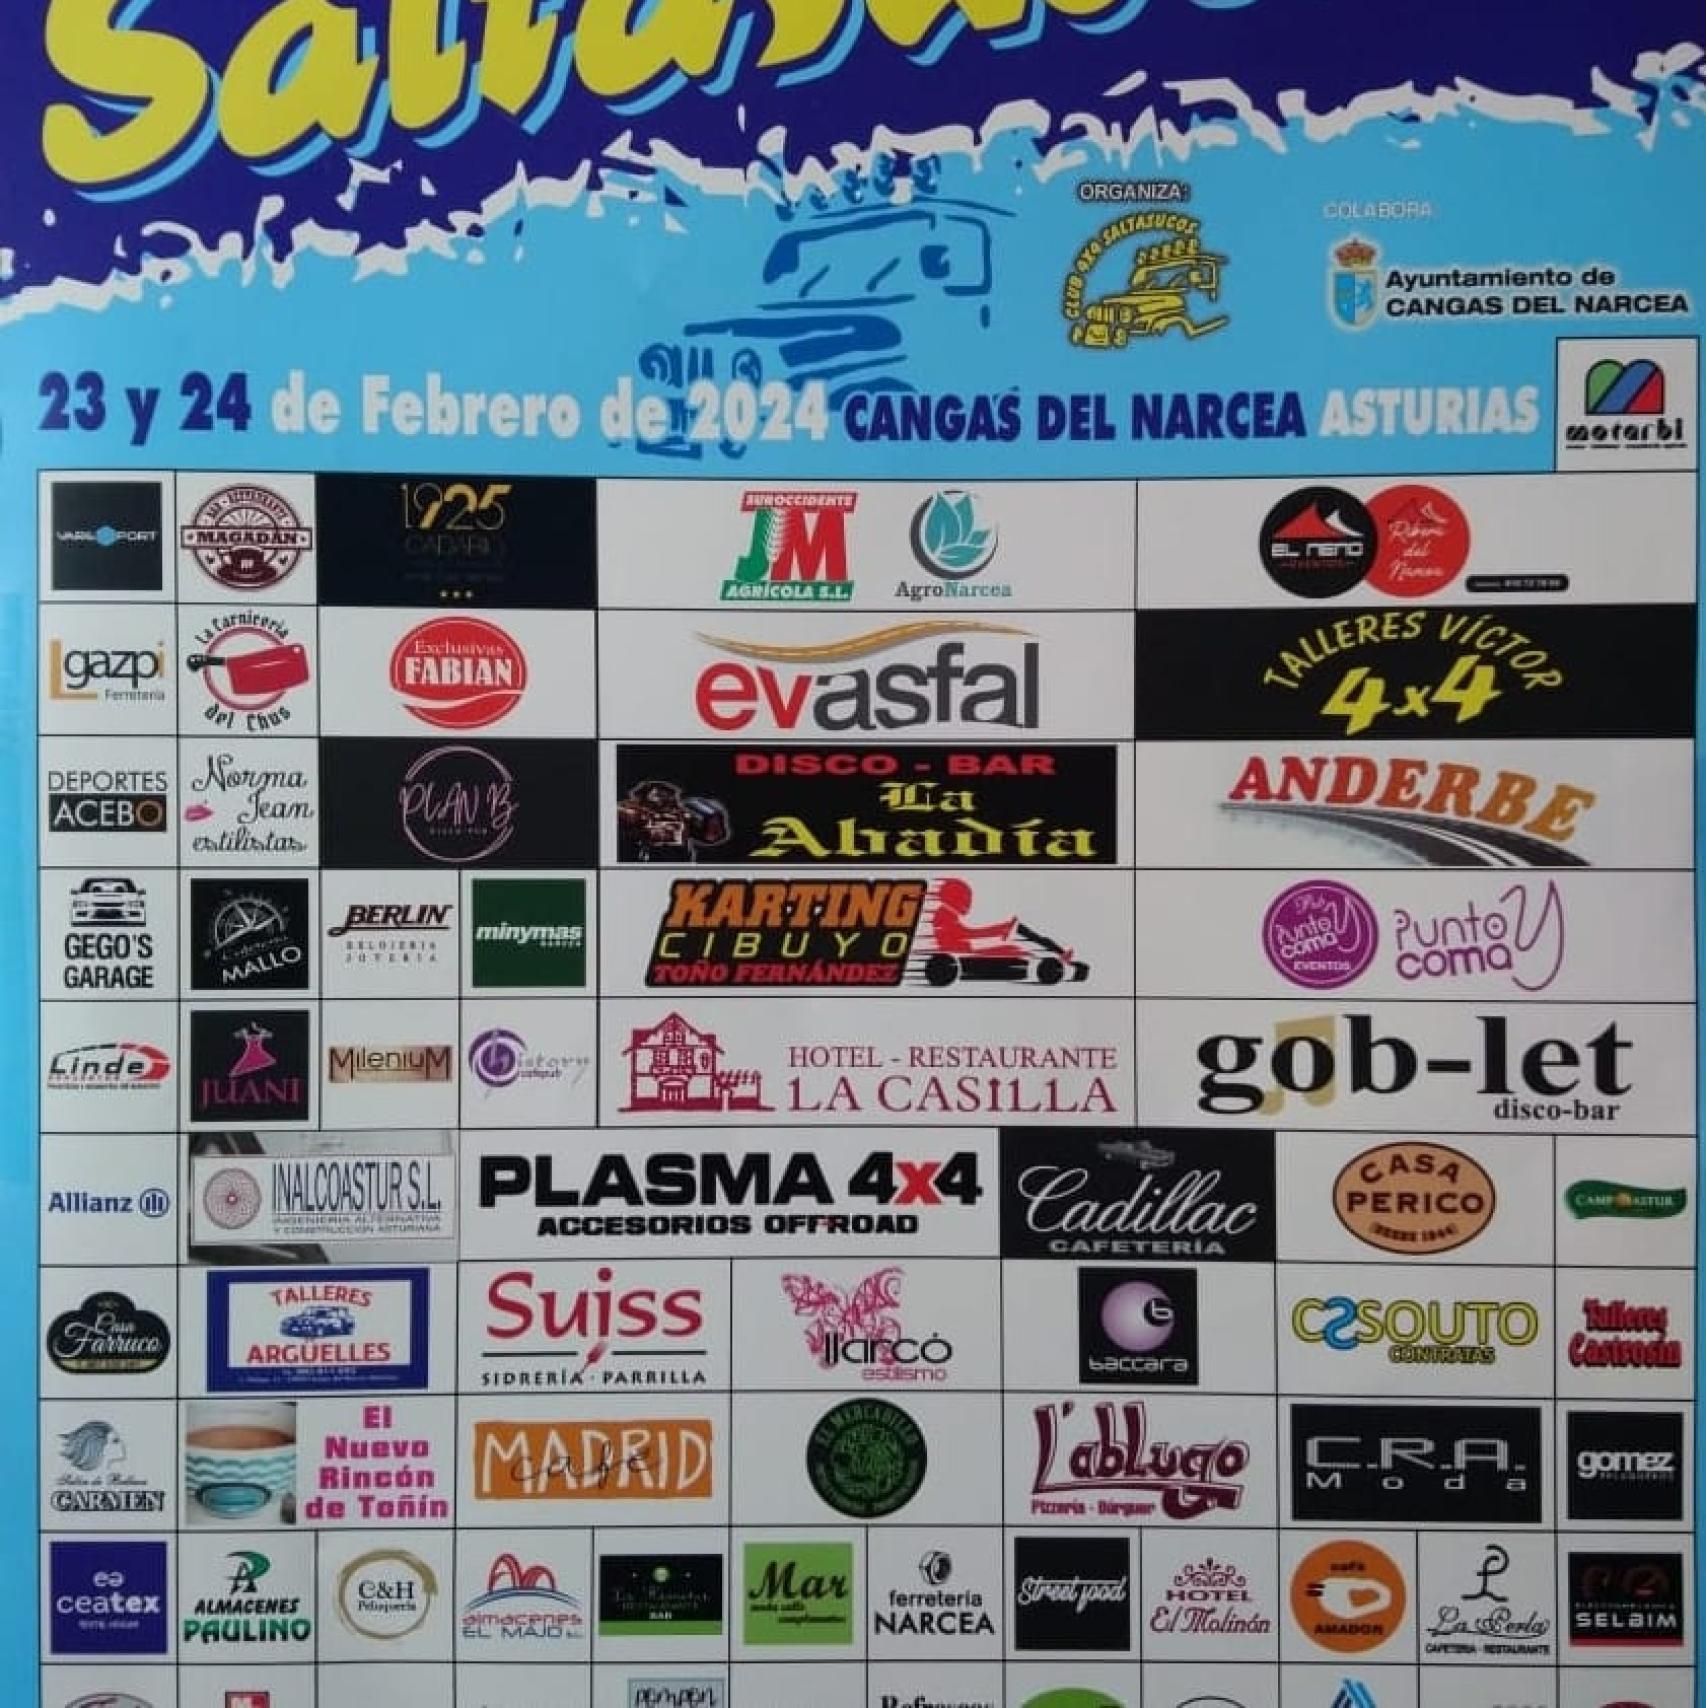 Vista del cartel de las rutas Saltsucos organizadas para el 23 y 24 de febrero.